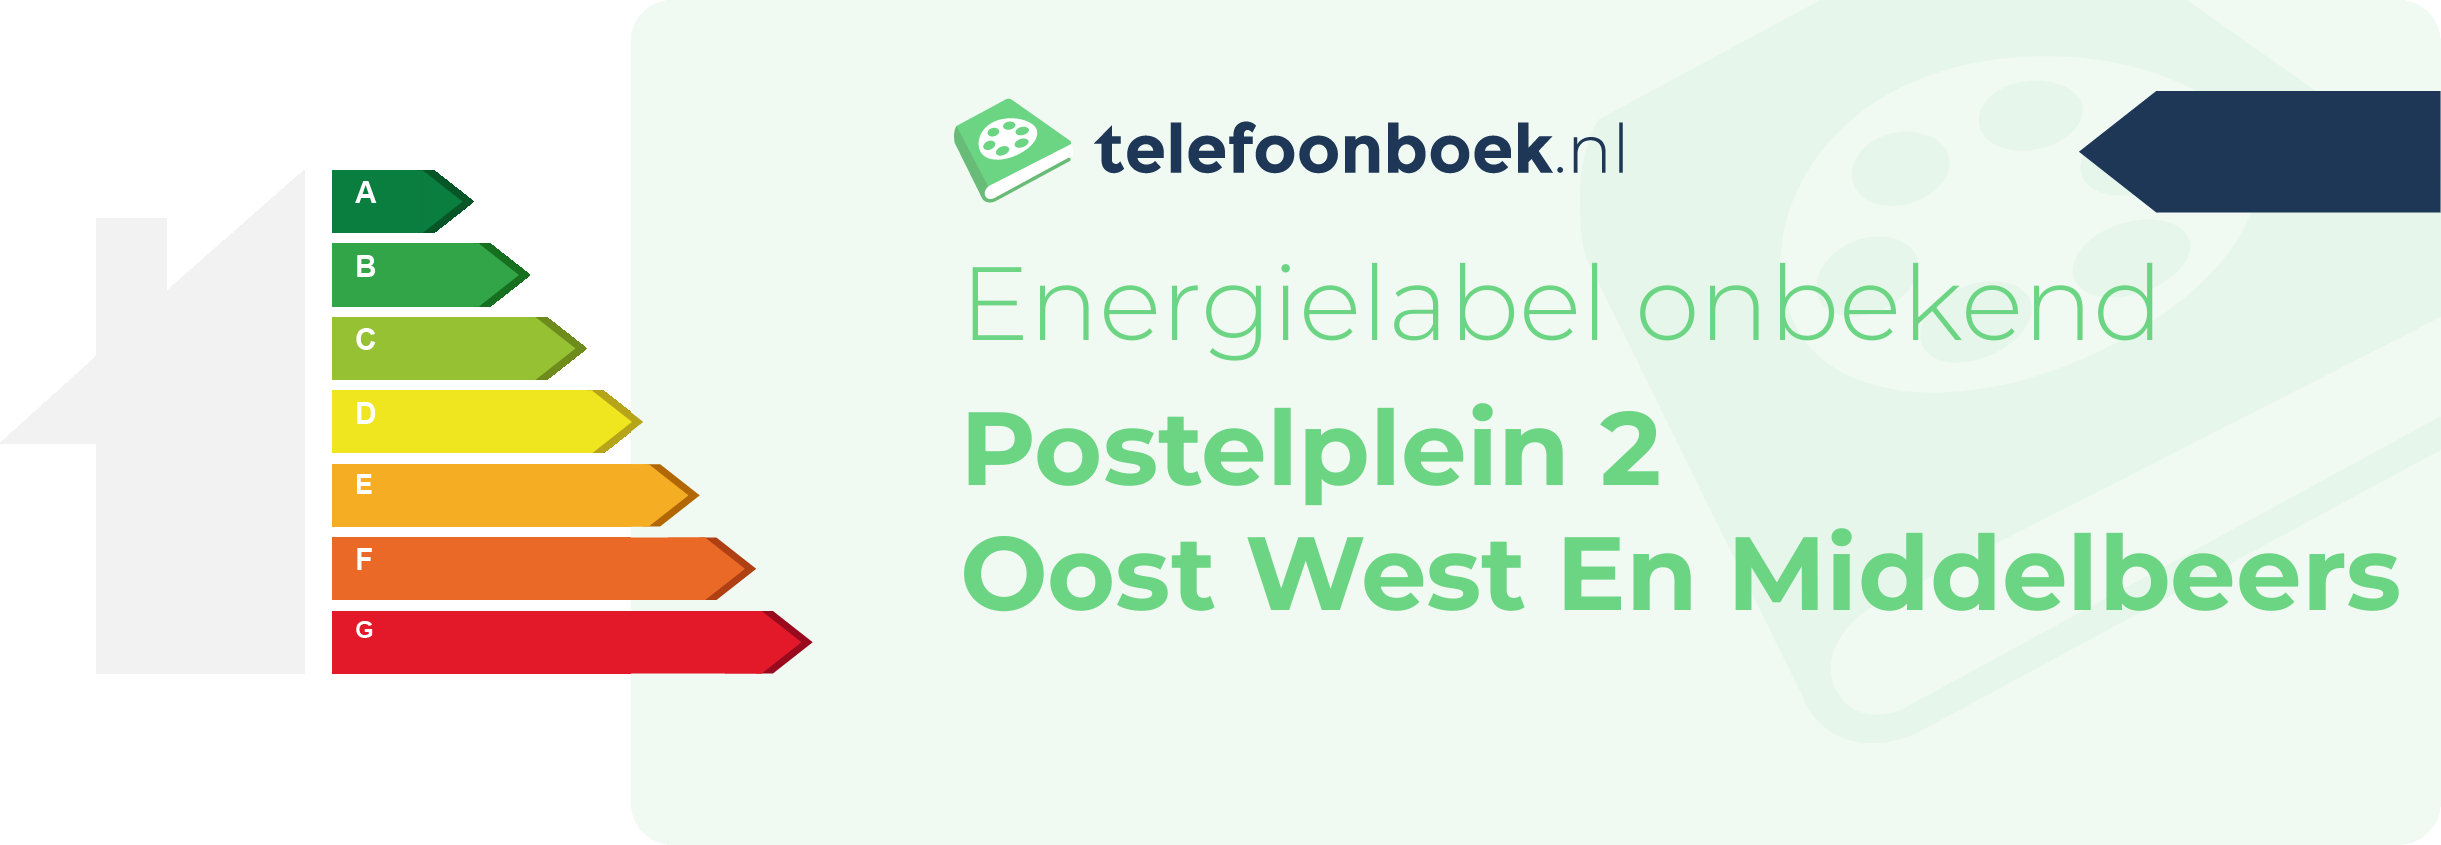 Energielabel Postelplein 2 Oost West En Middelbeers